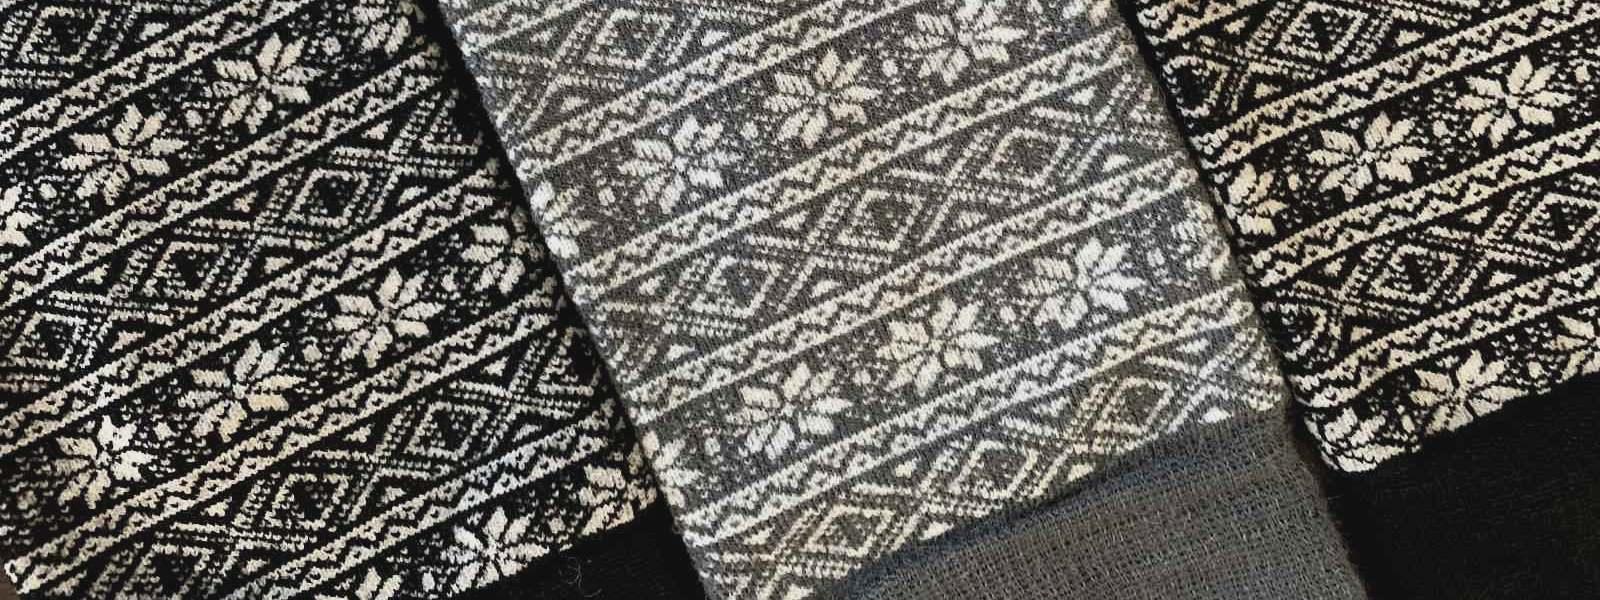 11 Reasons Everyone Should Own a Pair of Alpaca Wool Socks - Nootkas